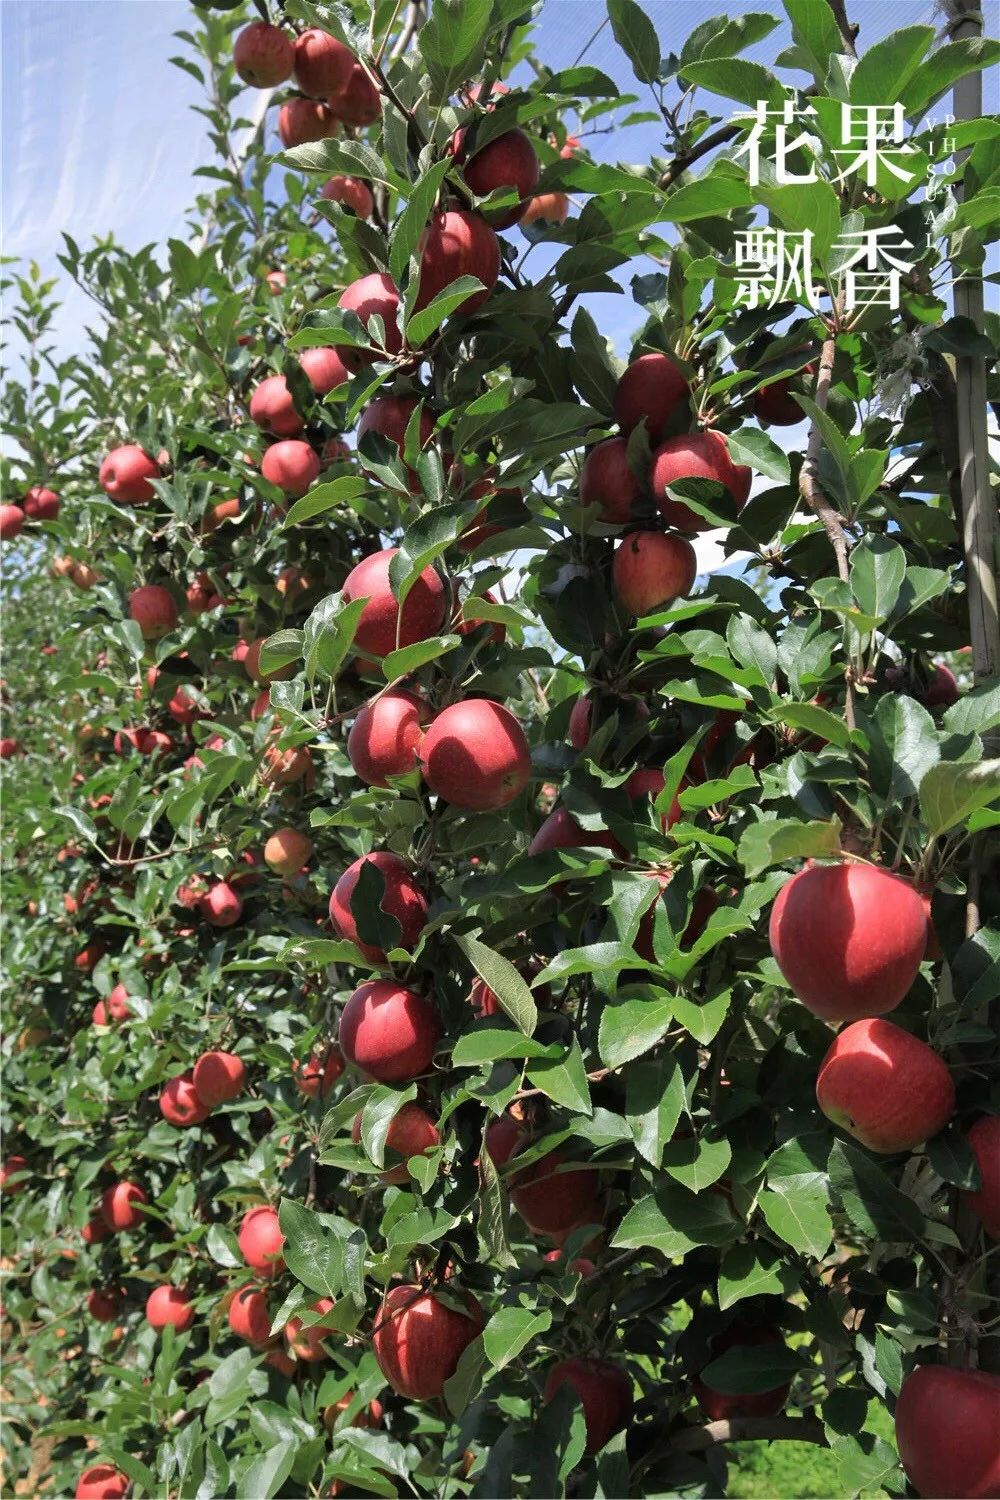 现代化种植模式数字化管理技术昭通海升苹果园实景拍摄